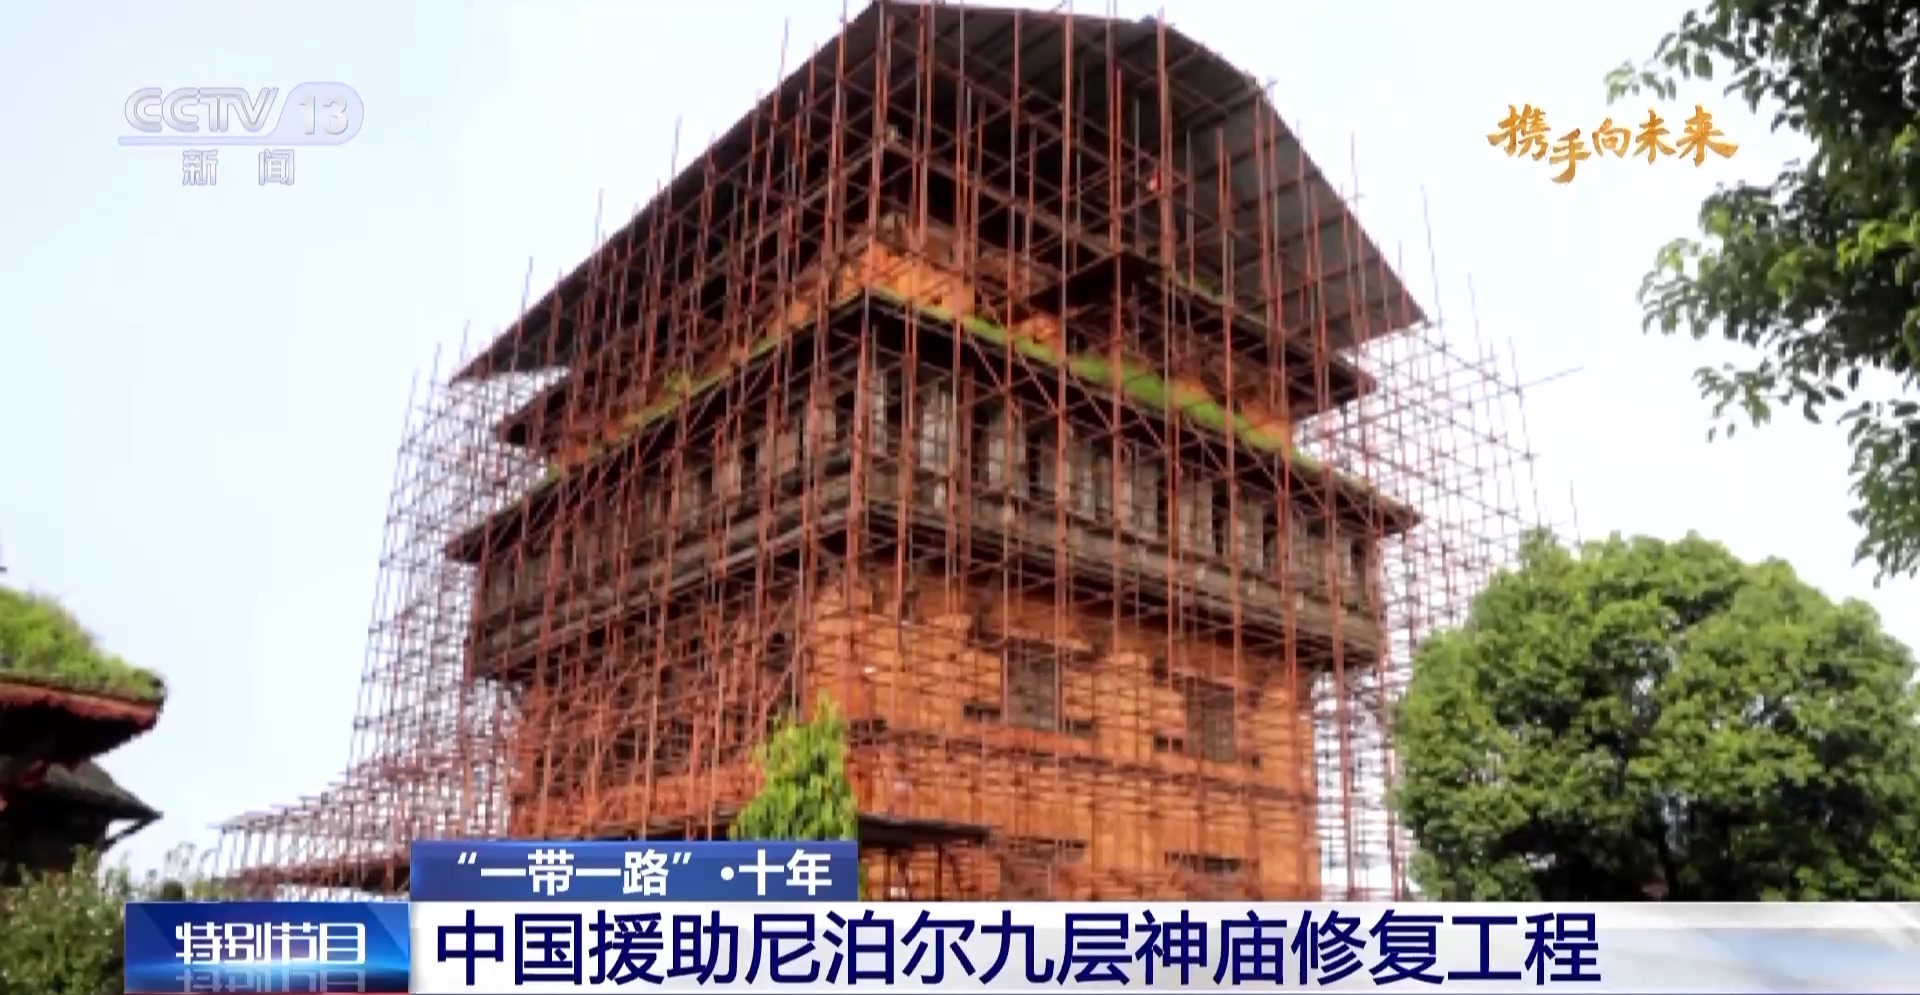 吴哥古迹、希瓦古城……我国与共建“一带一路”国家开展了这些文物援助项目